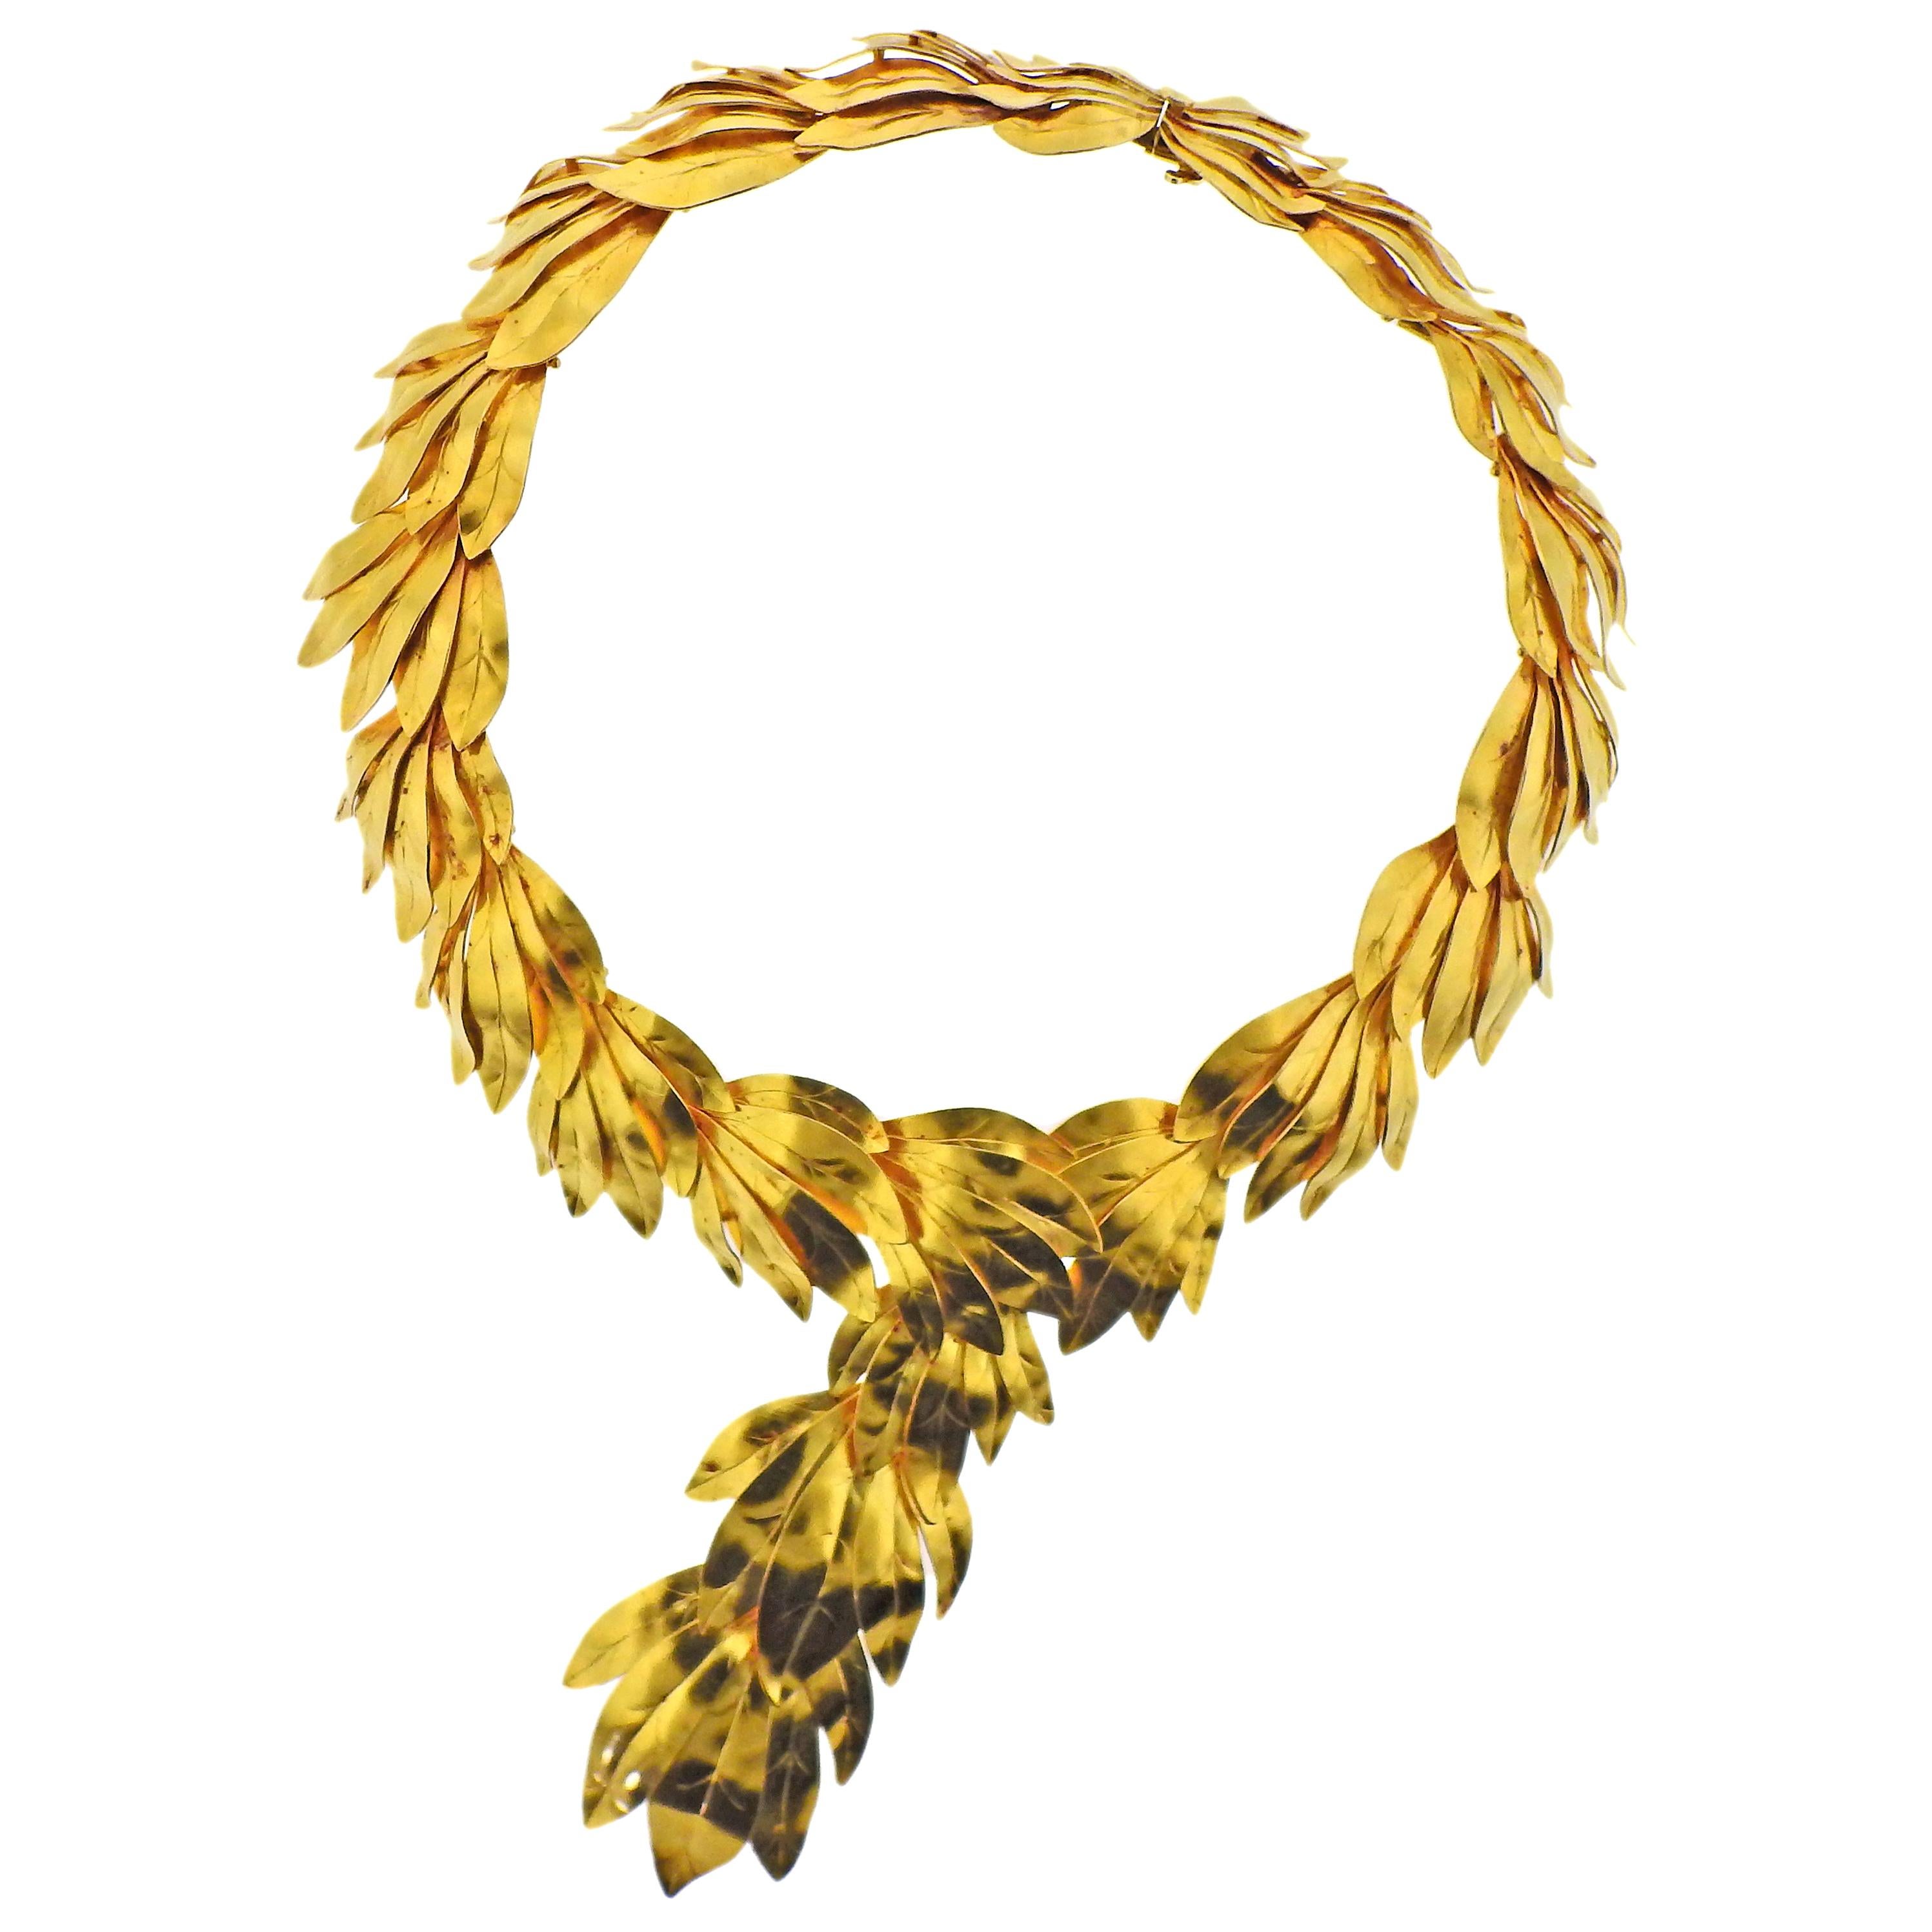 Zolotas Greece Gold Necklace